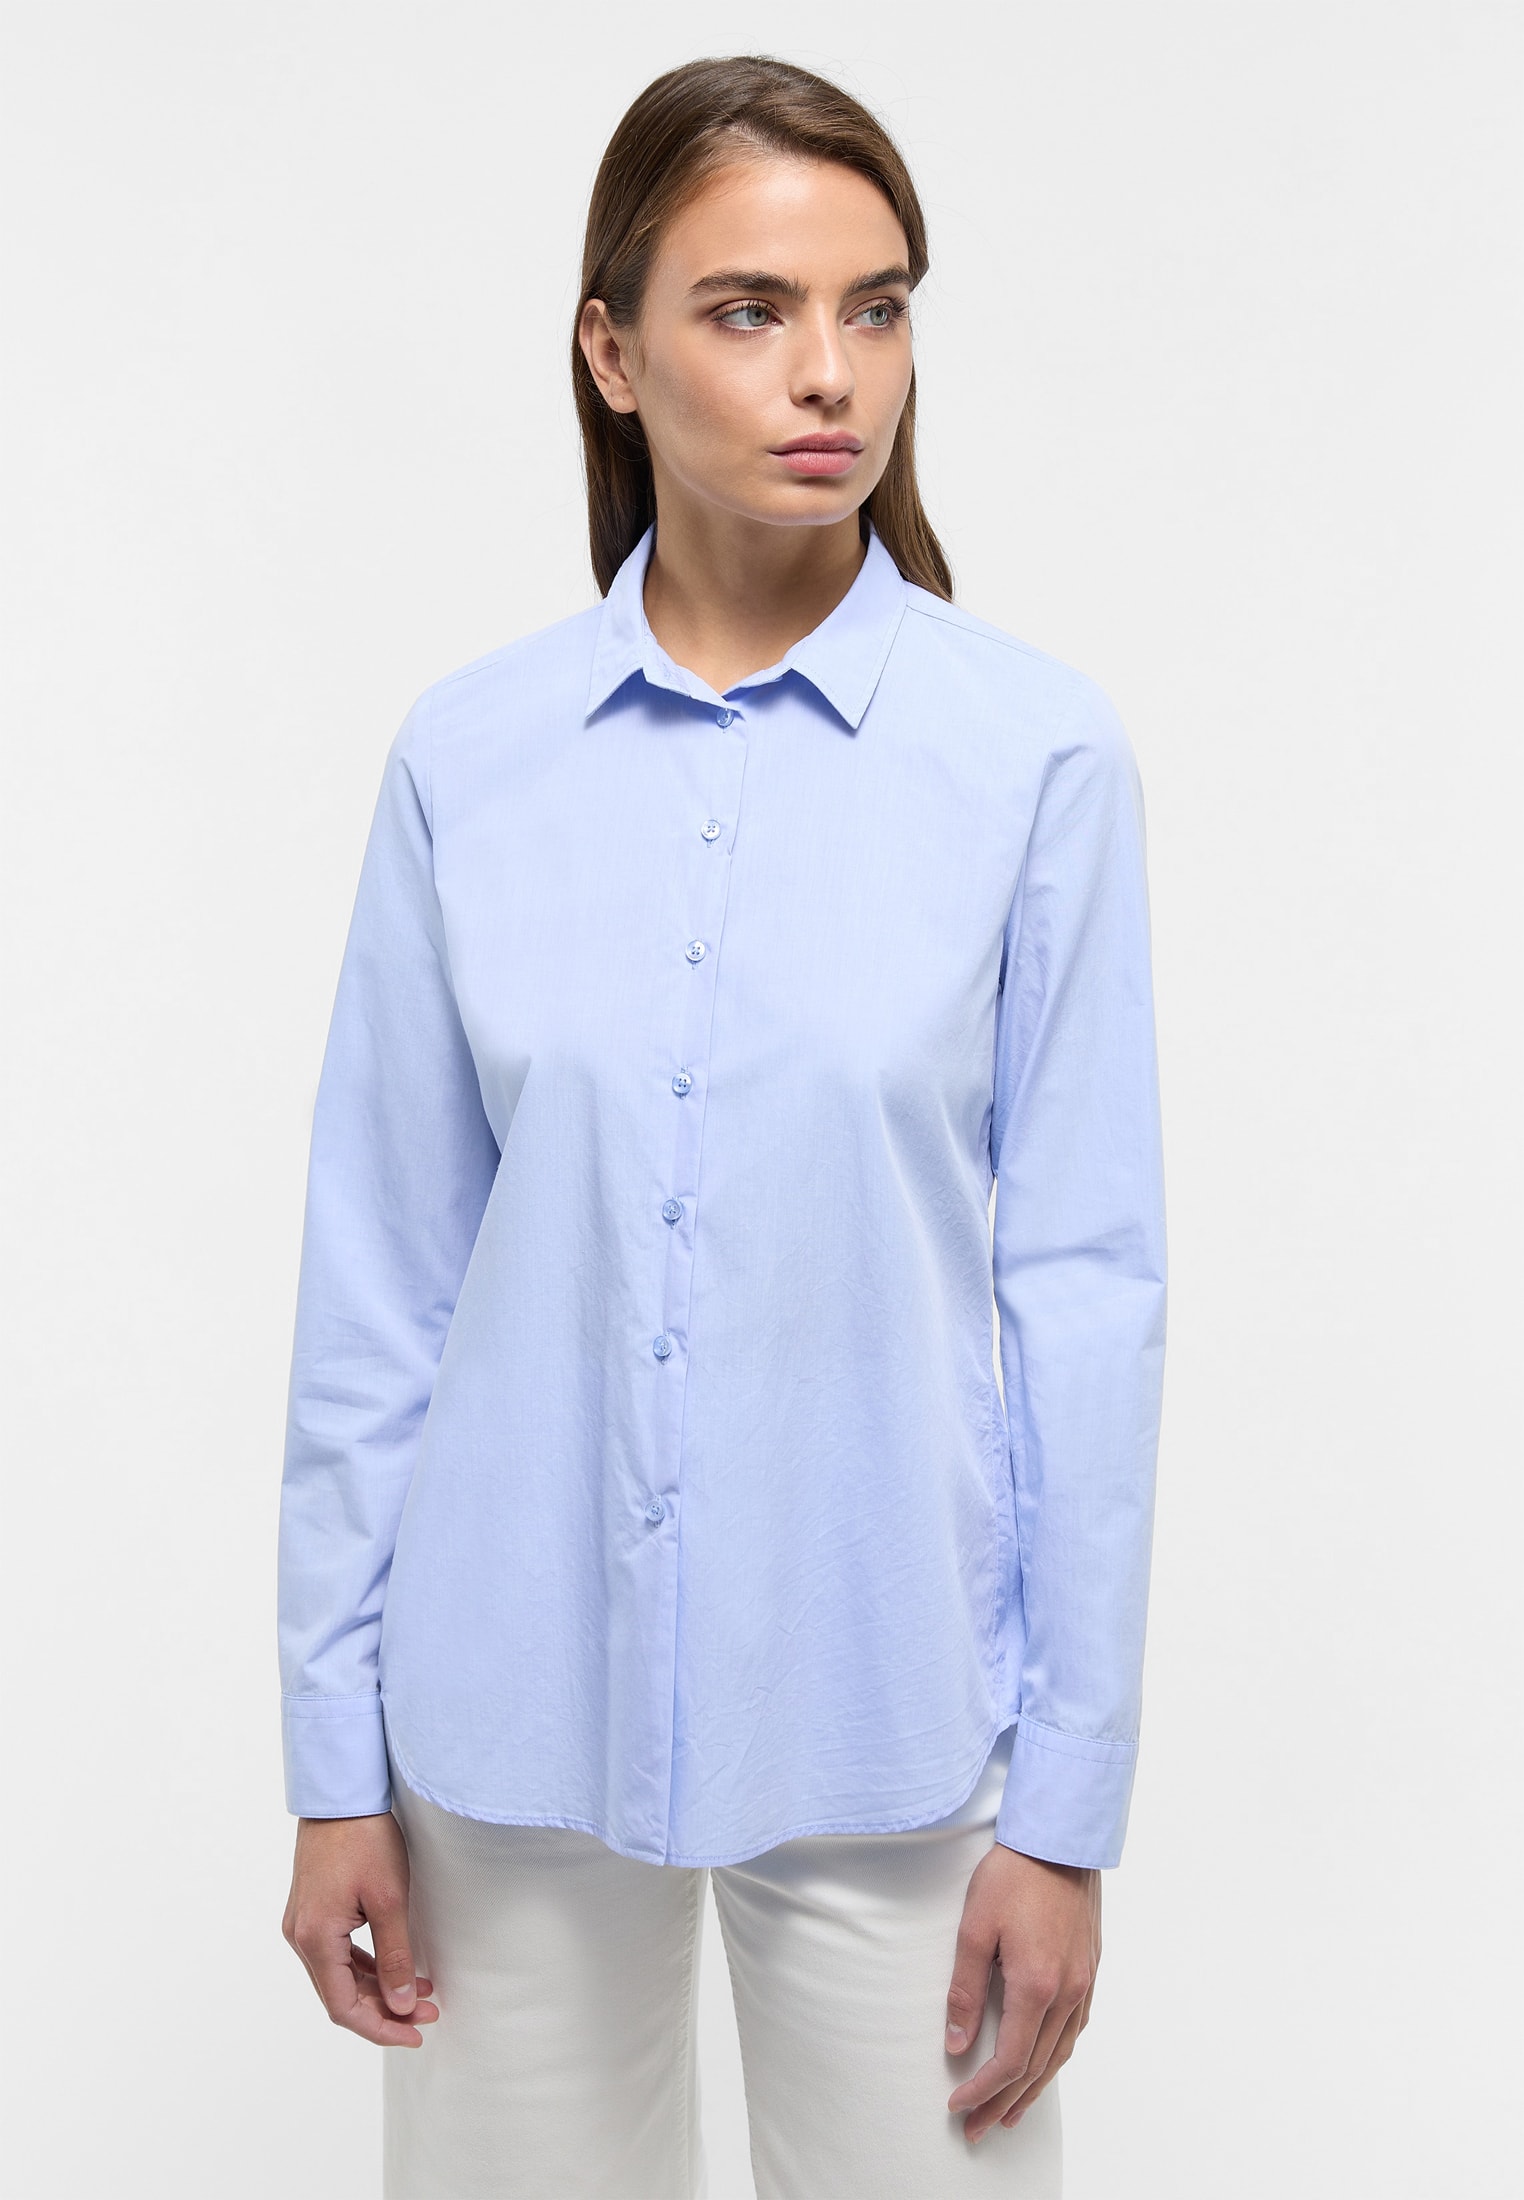 Blusen für Damen online kaufen | ETERNA